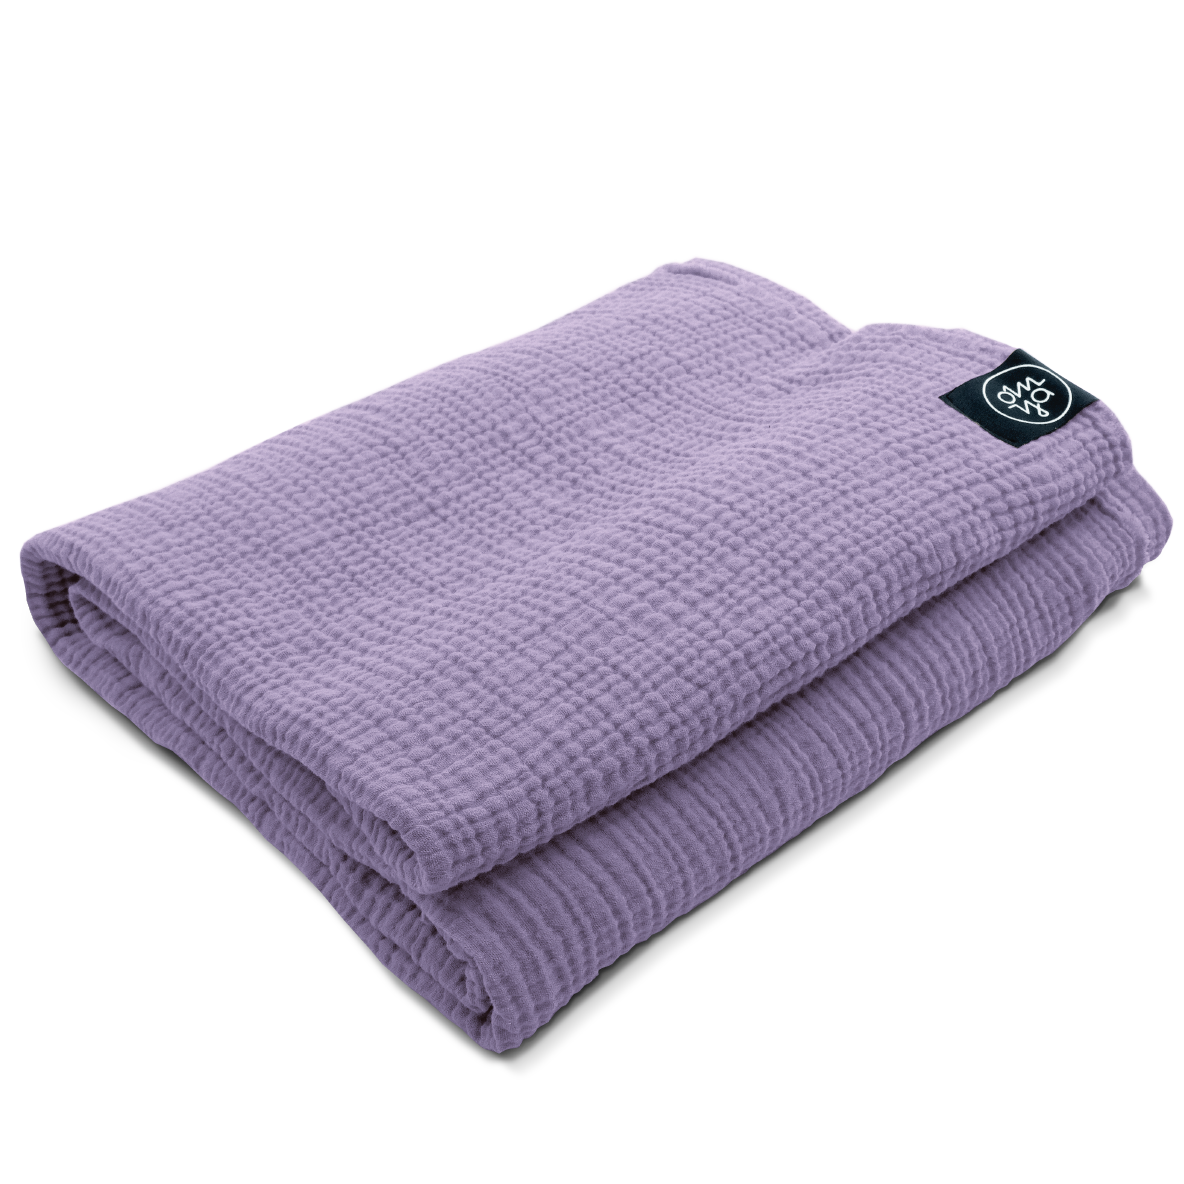 Shavasana Blanket - Lavender Muslin